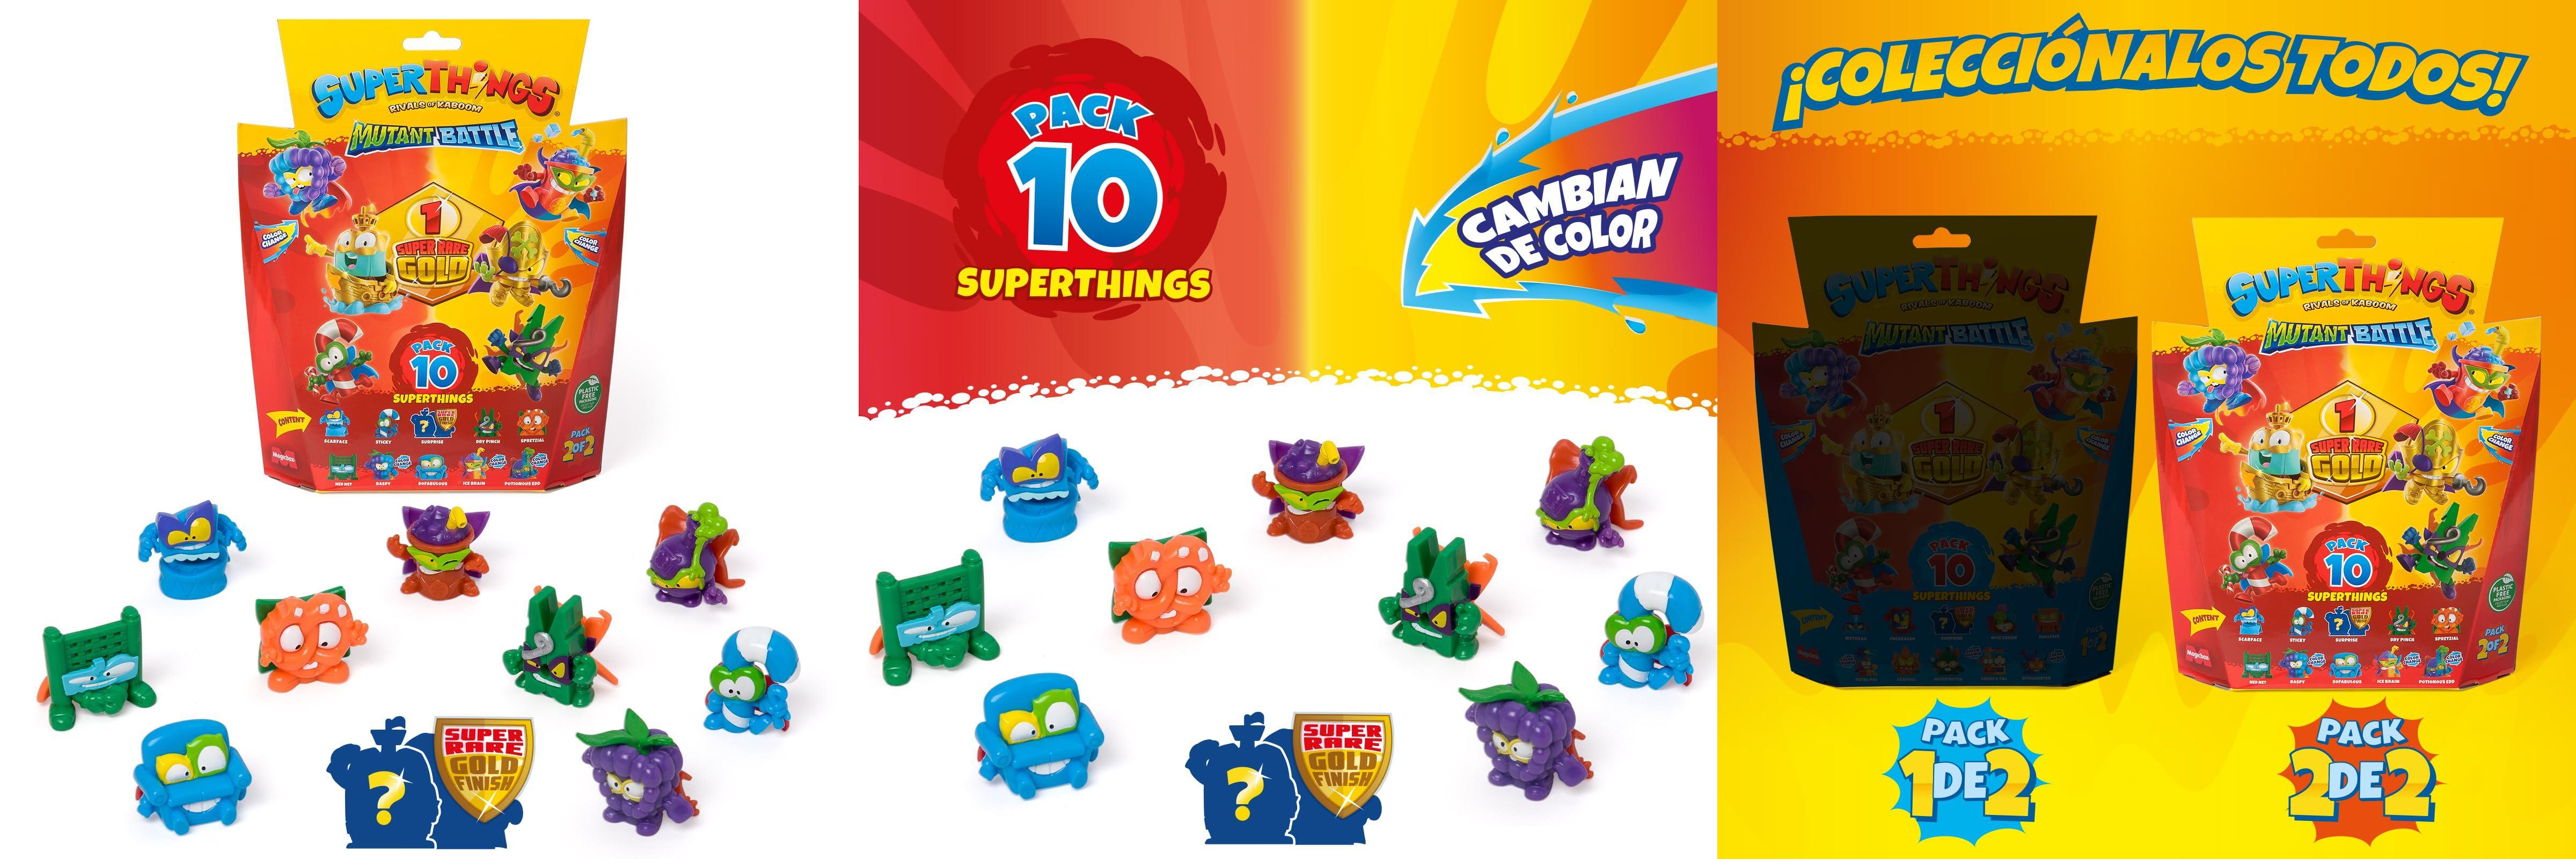 Descubre la emoción de SUPERTHINGS Serie Mutant Battle con este pack de 10 figuras especiales ¡Incluye líder Dorado y SuperThings que cambian de color!